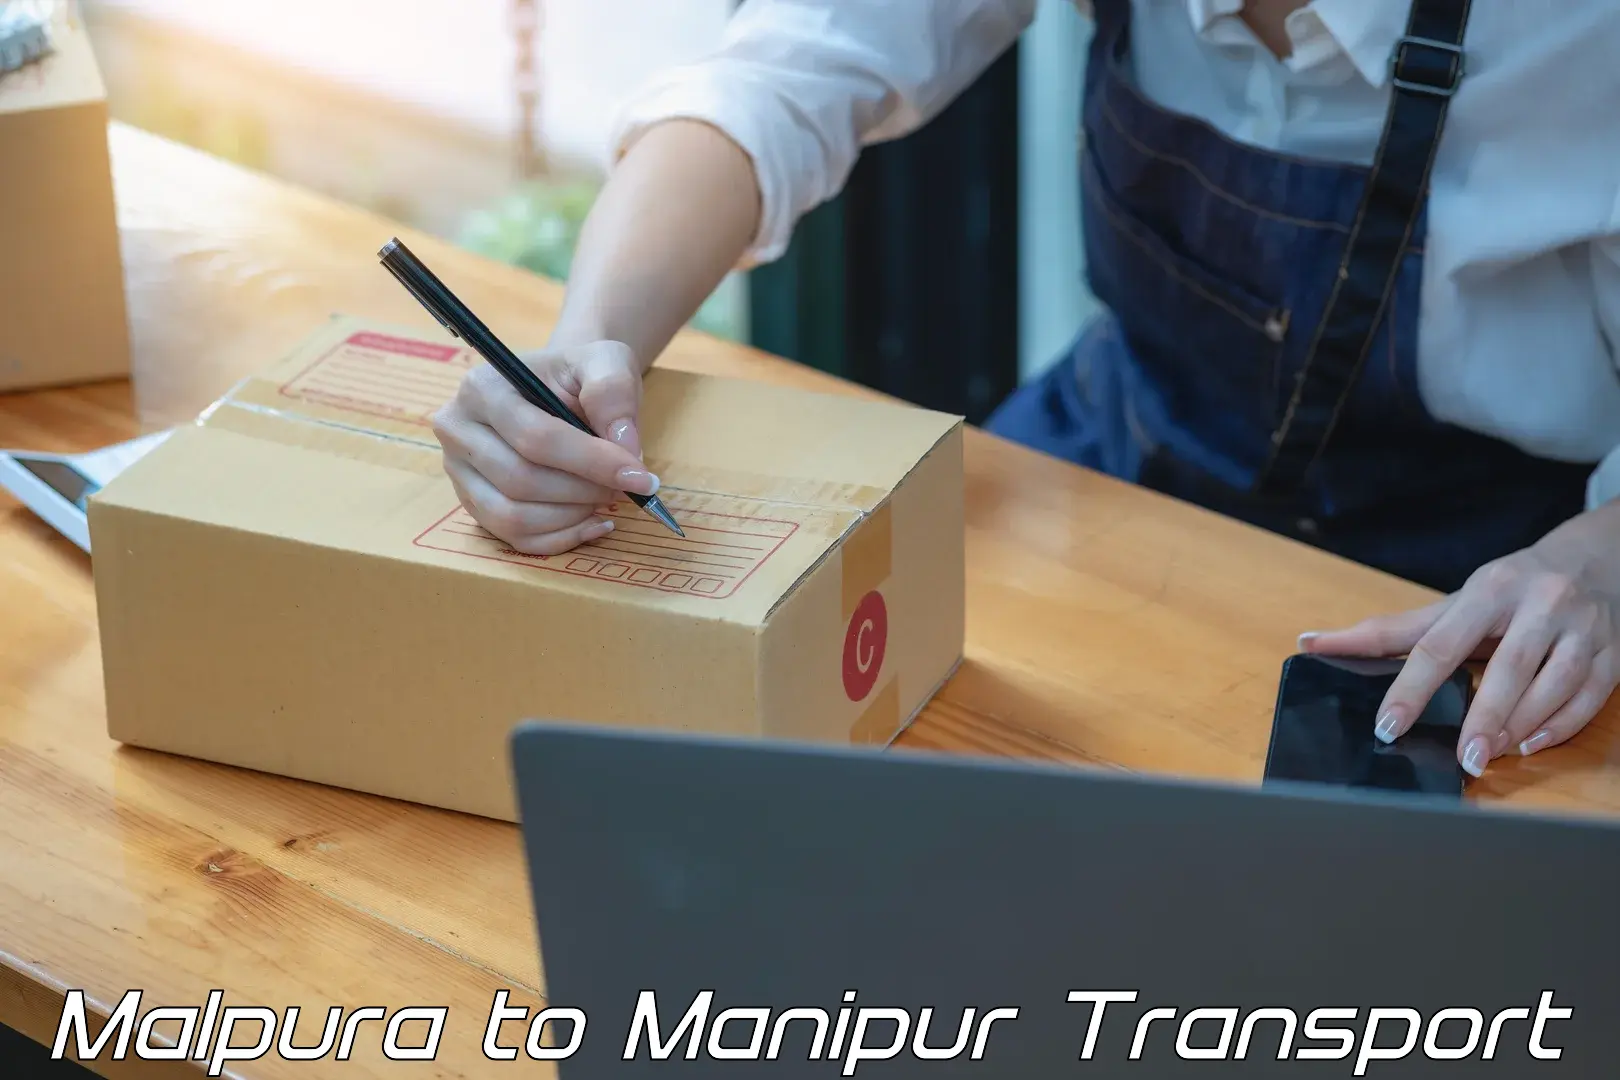 Interstate transport services Malpura to Manipur